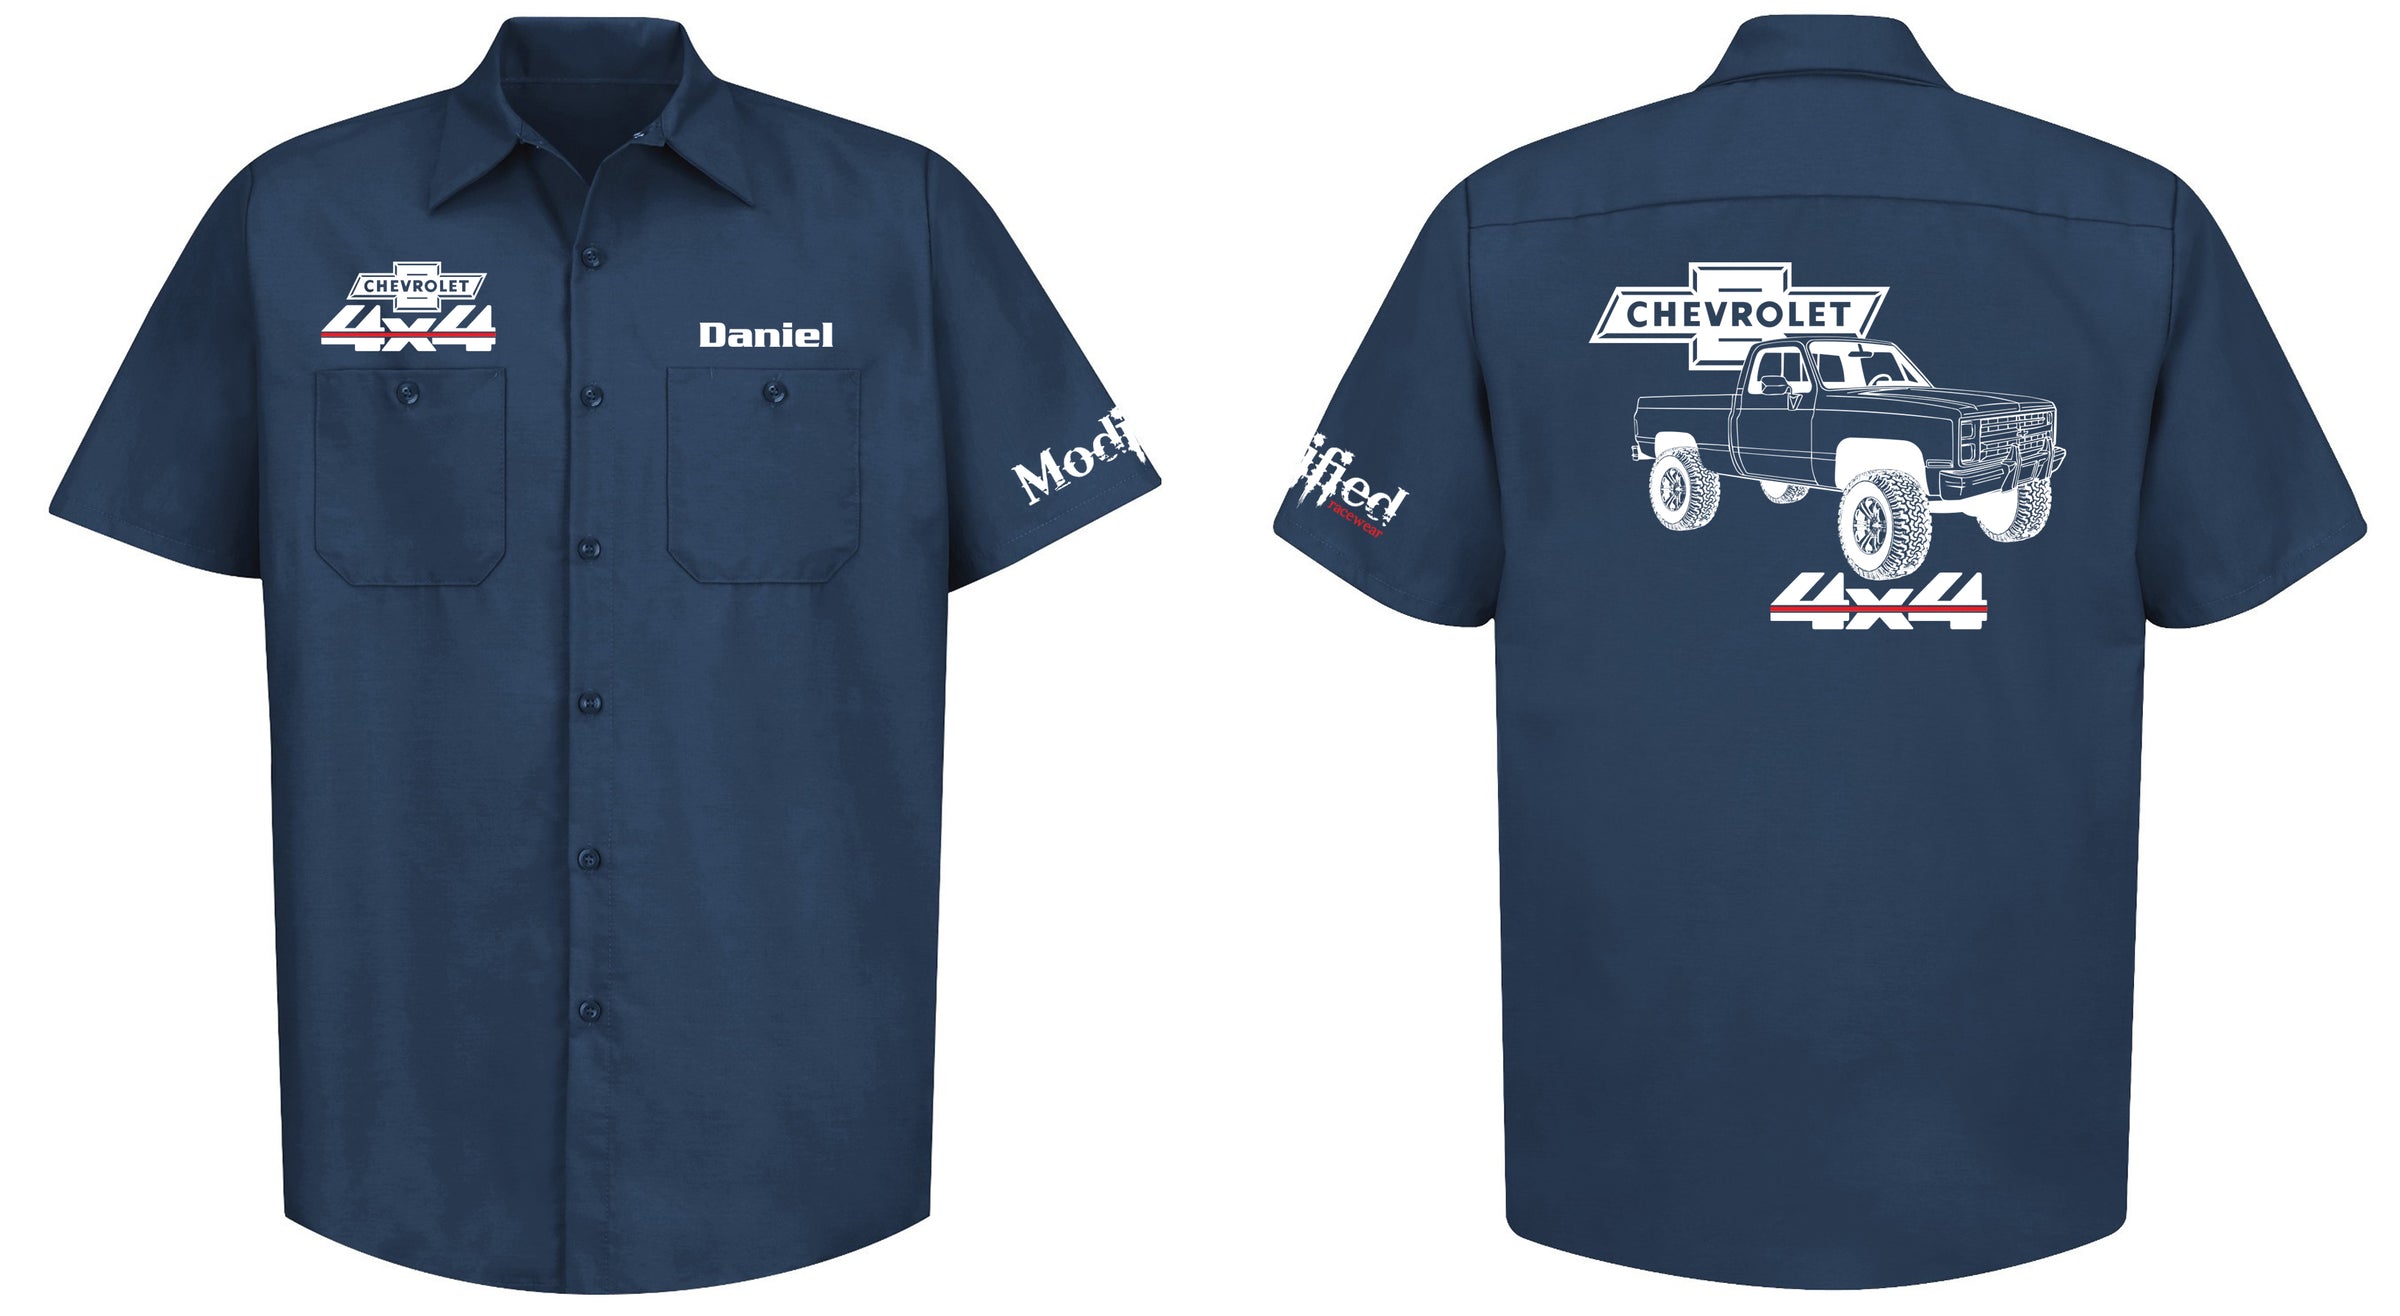 Chevy Square Body 4x4 Truck Mechanic's Shirt – Modified racewear